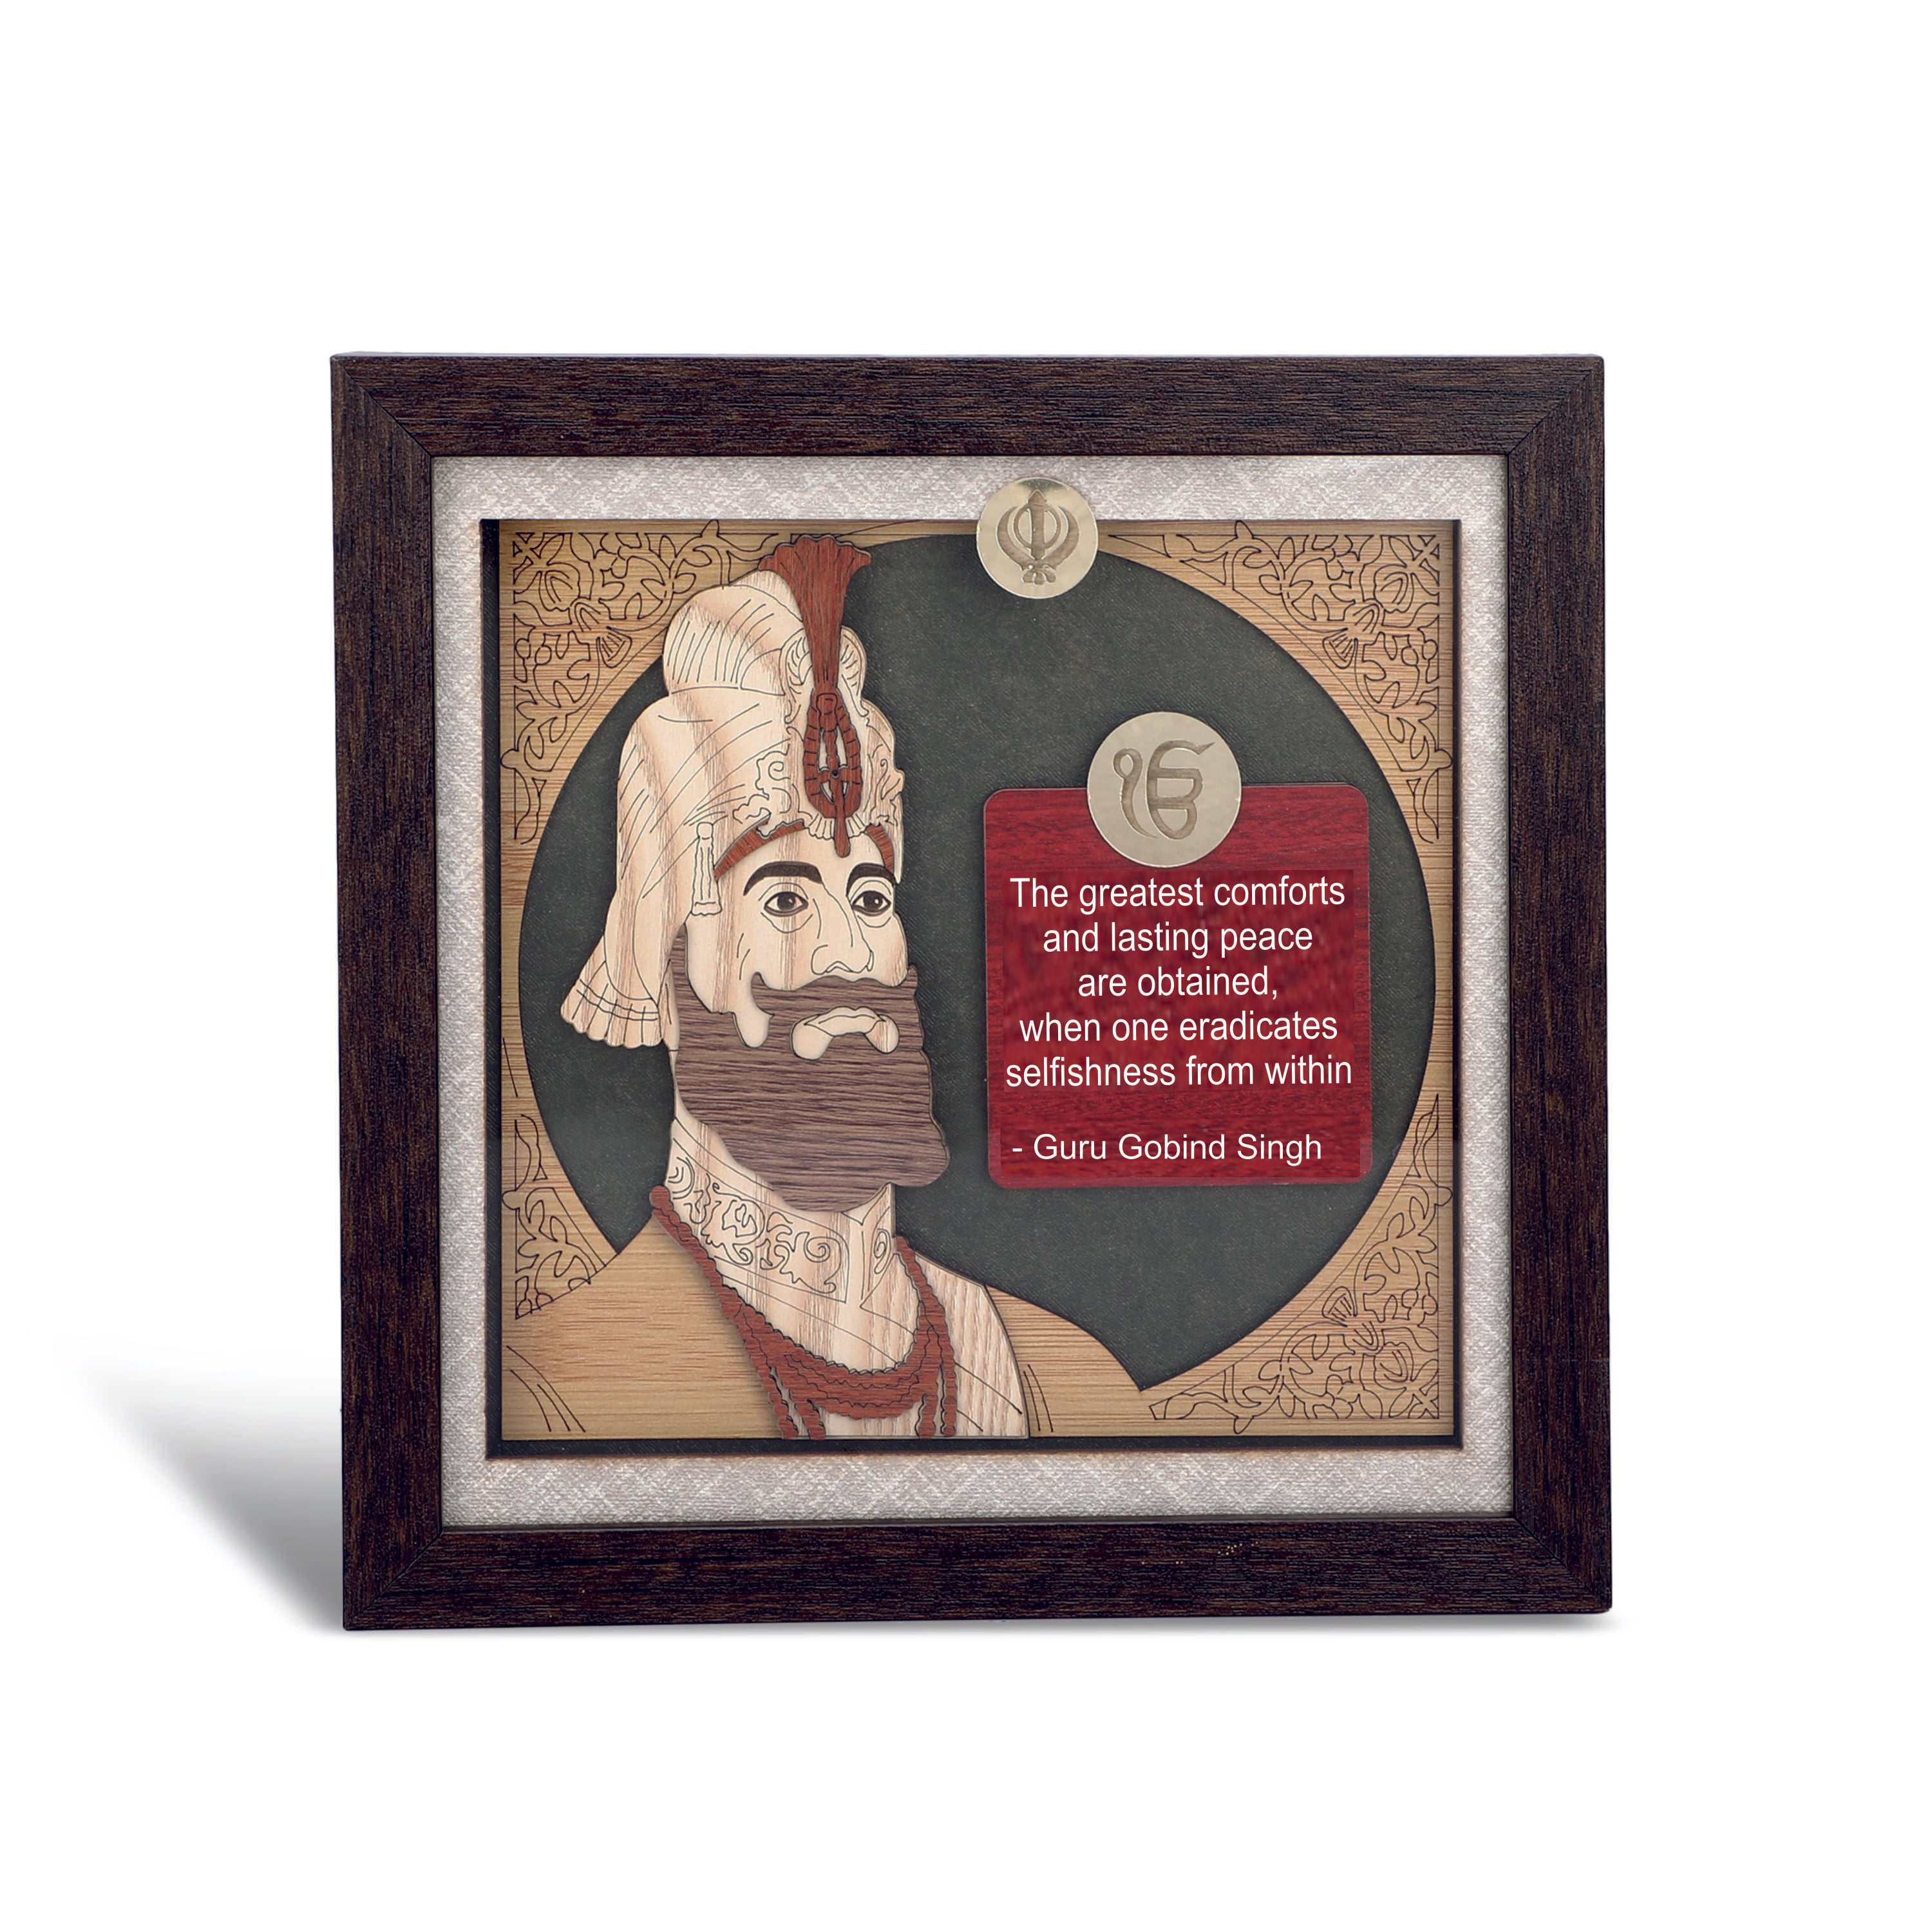 Guru Gobind Singh ji - 3d Wooden Layer Frame